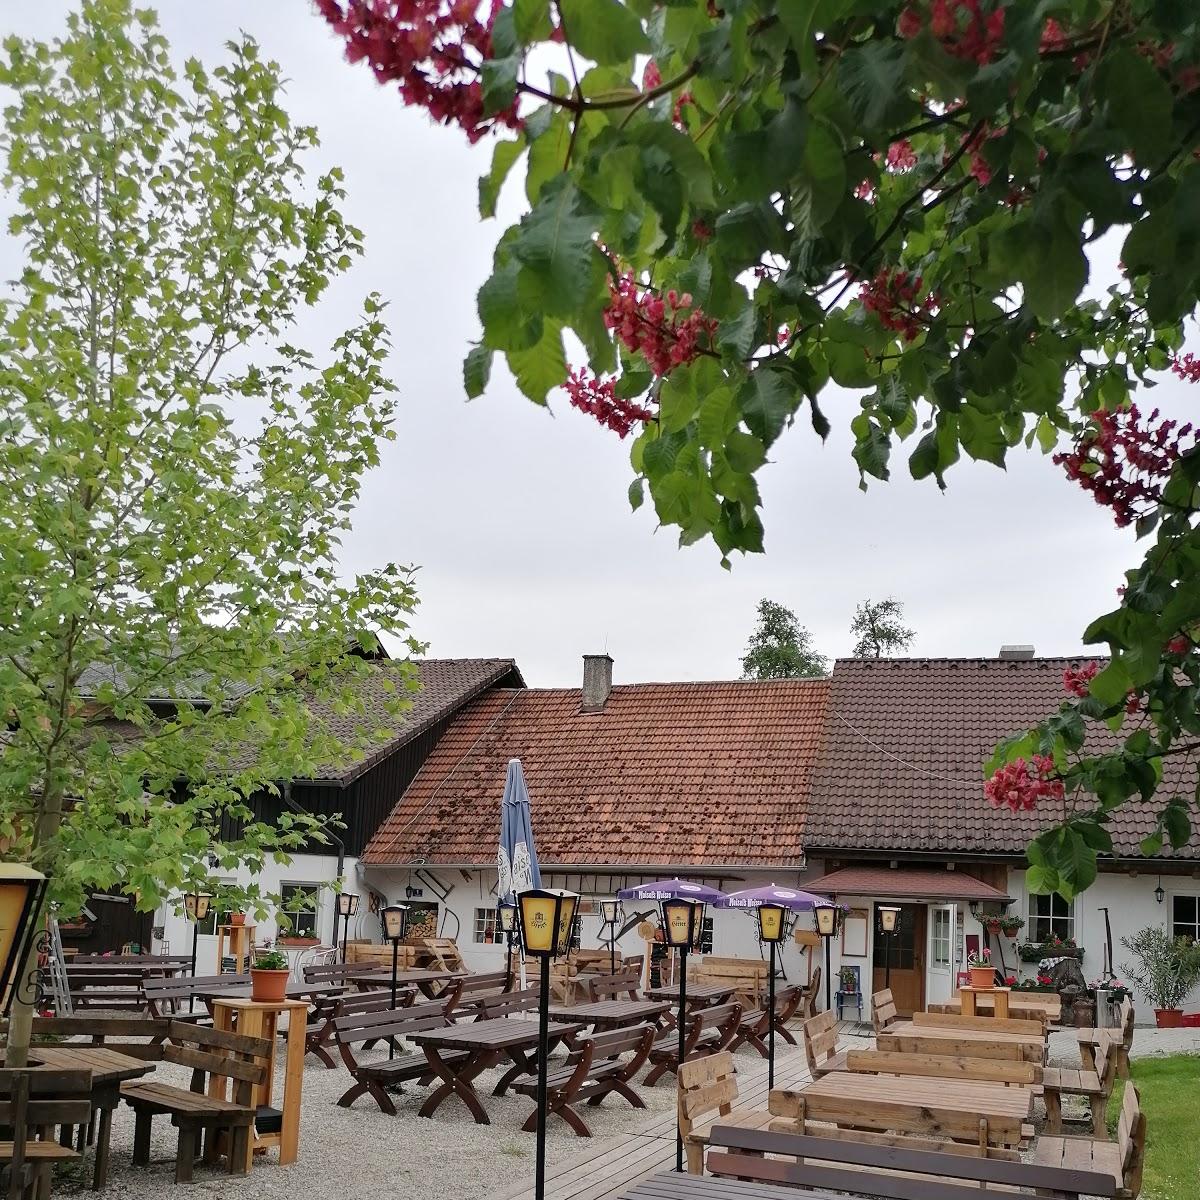 Restaurant "Binder im Holz" in Schleißheim